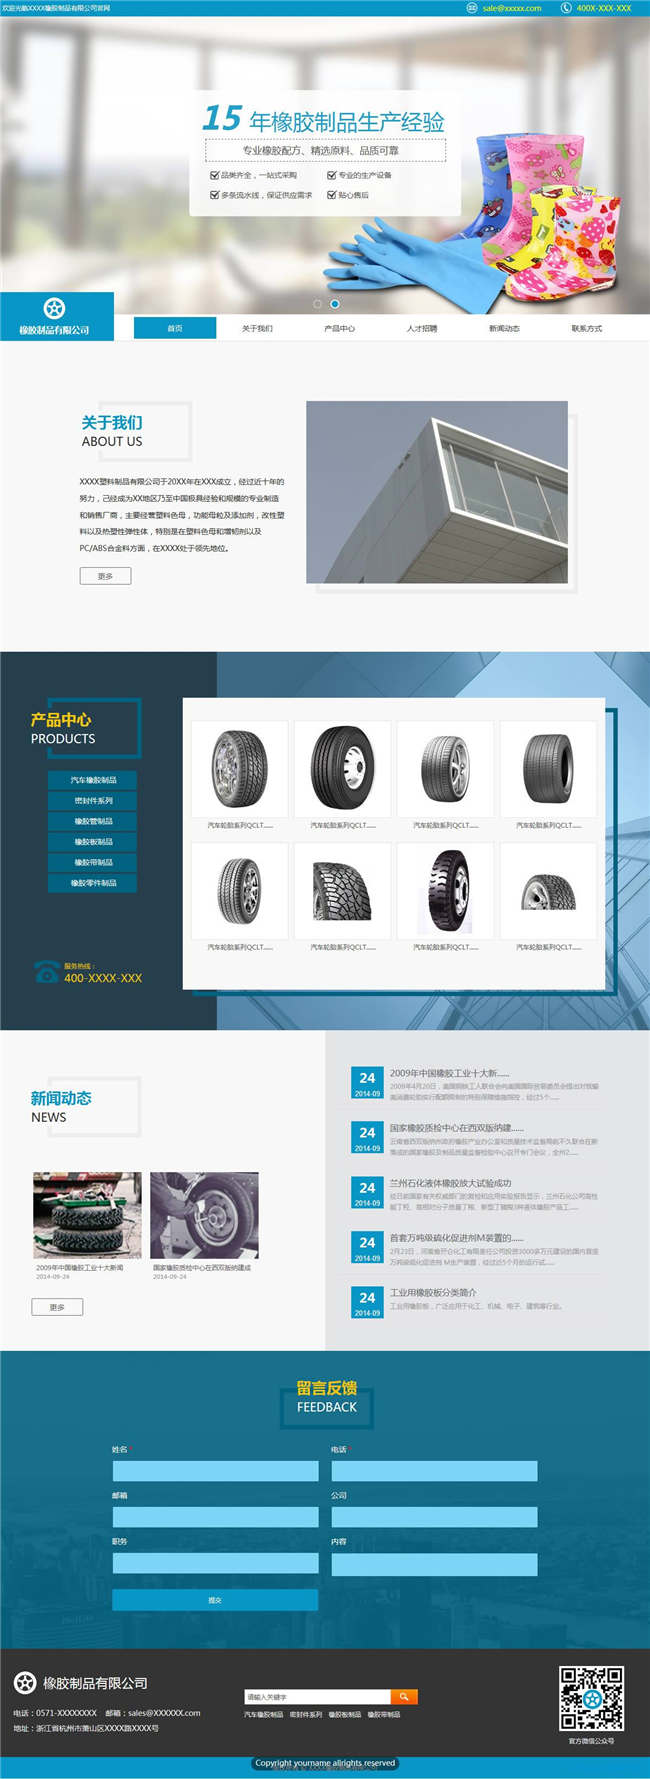 橡胶公司建材冶金橡胶塑料轮胎网站WordPress主题下载演示图